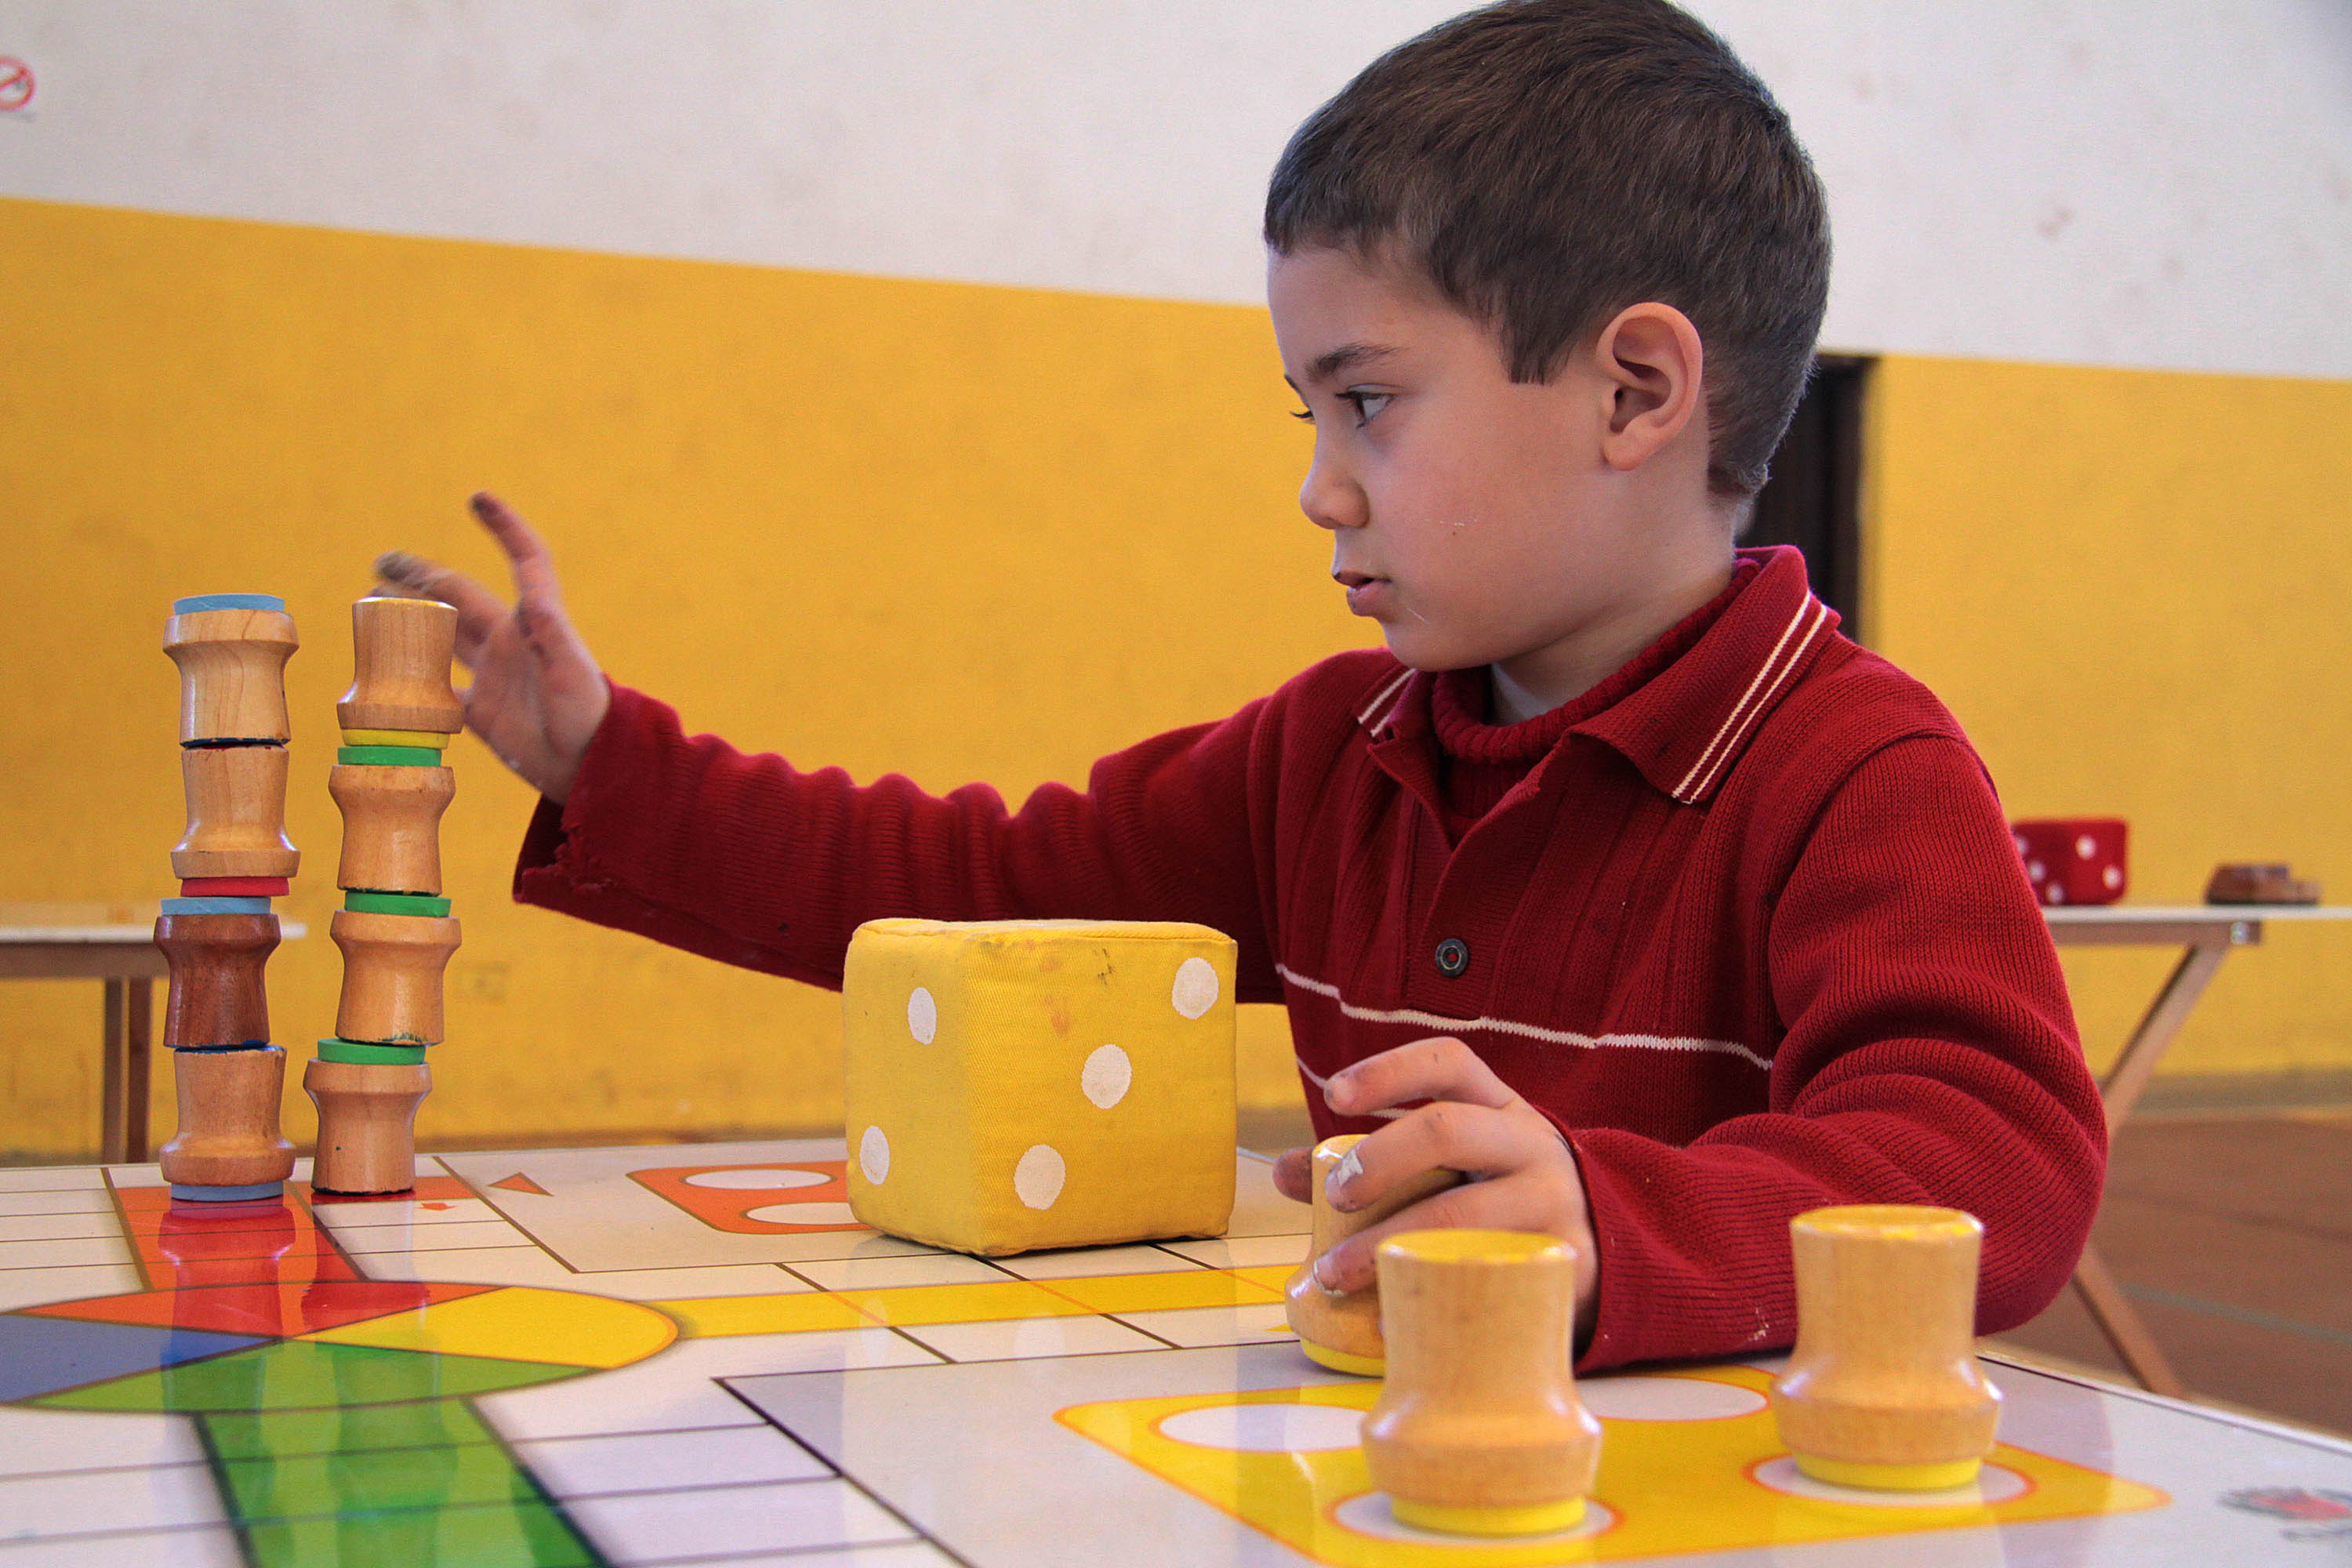 Creche Comunitária Montessori - Bom dia!